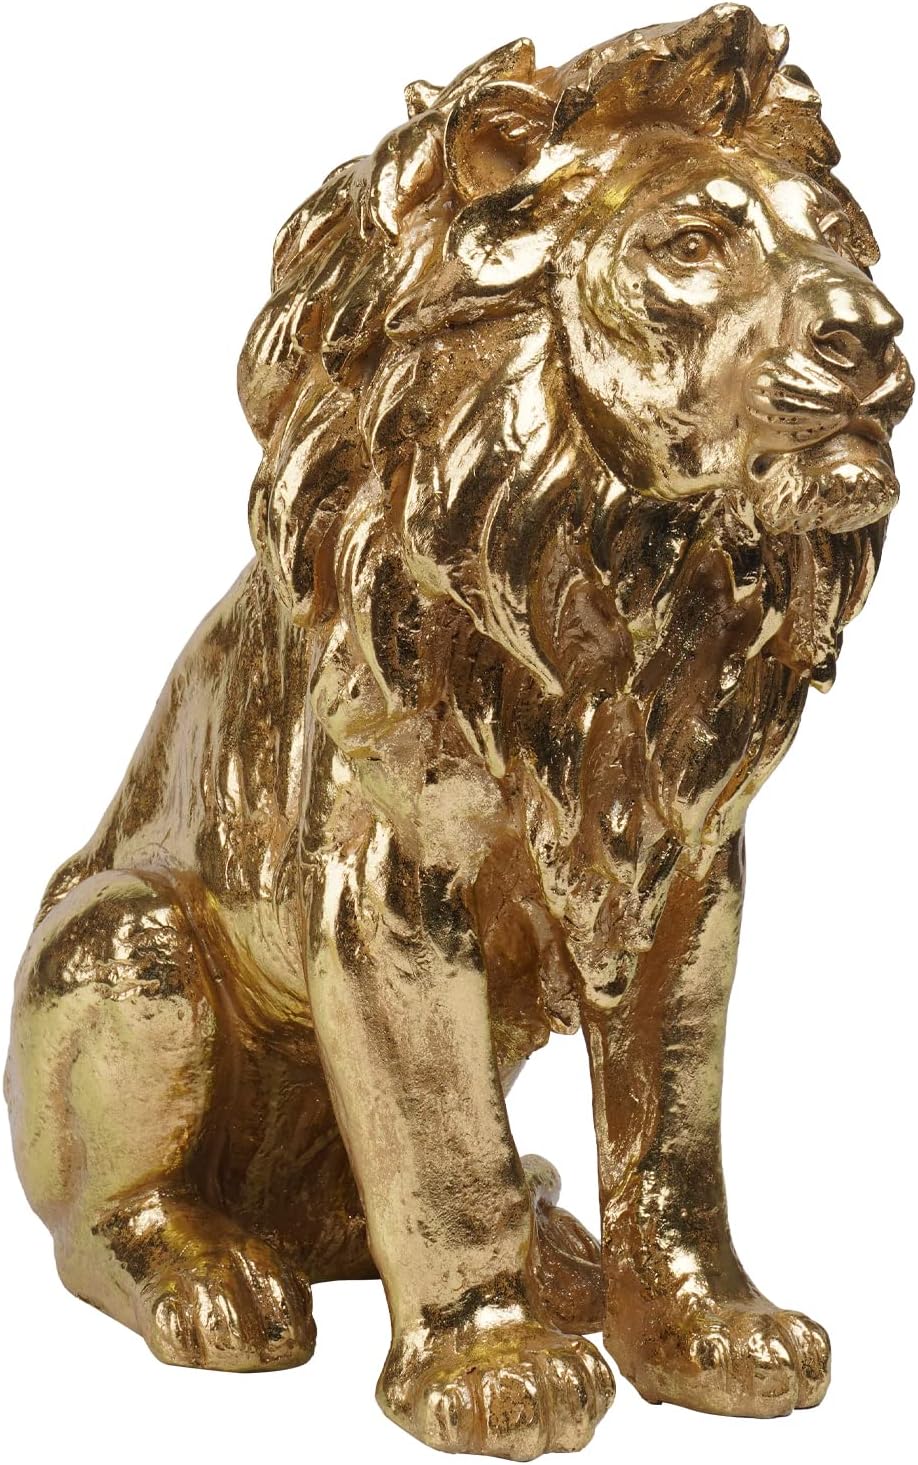 幸運 祝福 金色のライオン彫像 コレクター向けフィギュア 約50cmゴールド ホームデコレーション 大型ライオン彫刻 コレクション アート工芸贈り物プレゼント輸入品 ---------------------- Gold Lion Statue Collectible Figurines ? 20 Inch Gold Standing Lion Home Decor Lion Size Large Sculpture Lion Statue Gold Lion Decor Modern Home Decoration 20 x 9.5 x 19 Inch LC LCdecohome 製 製品サイズ；高さ 約50.1cm×幅 約48.3cm×奥行 約24.1cm 重さ；約7.6kg 商品型番；B0BYZC3WF7 素材；コールドキャストレジン製 ハンドペイント仕上げ 石粉や炭酸カルシウムを混合した樹脂（ポリストーン等）を、型に流し込み、 成型させたもので、プラスチックと石の中間のような性質を持っていて、重量感がありますが、細かい装飾性が優れており、質感の再現性も良く高級感 を持った仕上げが可能です。落したりすると割れたり欠けたりします。 米国でプロデュースされた、美術品の彫像です。 この彫像は、米国、NYの店舗ショップからの発送し、弊社東京店にて検品後、国内発送しますので、約18～26日後のお届けとなります。 ----------------------- 【商品説明】 【ライオンスピリット】 ライオンは名誉、尊敬、王族、勇気、強さの象徴です。 ライオン像は平和と繁栄をもたらすと言われています。 【抽象的な装飾のためのリアルなデザイン】 シンプルでエレガントなゴールドカラーのリアルで非常に詳細なライオンヘッド彫像。 【ほとんどの場所にぴったりのサイズ】 抽象的な野生の彫刻の装飾像は、モダンな家の装飾、オフィスの装飾、リビングルームの装飾、 暖炉の装飾、ホテルの装飾、バーの装飾に非常に適しています。 農家、モダン、素朴、ヴィンテージ、 ニュートラルな家の装飾など、さまざまな装飾スタイルにフィットします。 【家族や友人への上品なプレゼント】 リアルな細工が施されたディテールで、個人的な動物像コレクション、動物ステータスの愛好家、 獅子座の人への本物そっくりのギフトを作成し、妻、ガールフレンド、父親、母親、友人への愛を表現します。 お父さん、おばあちゃん、おじいちゃん、バレンタインデー、母の日、父の日、感謝祭、クリスマス、新年、 誕生日、新築祝い、記念日などの機会に。 【天然素材で長持ち】 耐久性のある樹脂から完全に手作業で鋳造されており、自然な仕上がりで長期間使用できます。 環境に優しく、メンテナンスは乾いた布で拭くだけで簡単です。 類似商品はこちら高さ35cm王冠を被ったホワイトライオン彫像百22,880円高さ35cm王冠を被ったブラック ライオン彫像22,880円高さ35cm王冠を被ったゴールド ライオン彫像22,880円トラペゾフォロン 翼を持った獅子台座 ライオン108,350円大型 高さ約50cmのミケランジェロ作ダビデ像42,900円ブロンズ色 コパー純銅製 百獣の王ライオン彫像49,500円ケンジントン ヒル製 岩の上立つ堂々としたライ53,680円プーシキン・ロマノフ風コレクター向けエナメルエ24,860円ルビー ロゼット ロマノフ スタイルのコレクタ38,500円新着商品はこちら2024/5/17トレイルキャストストーン風メモリアルガーデンベ195,800円2024/5/17疾走する馬の子ポニーの鋳造ブロンズ製ガーデン彫1,188,000円2024/5/16極北のフクロウ 梟守護神アールデコ調キュビズム163,900円再販商品はこちら2024/5/11木の切り株で蝶と遊ぶ妖精彫像手描きの美しい魔法36,300円2024/5/1デコ79製 ゴールド風 トロピカル置物 ヒョウ41,800円2024/4/22セール！即納！テッド・ブレイロック インディア16,500円2024/05/17 更新 幸運 祝福 金色のライオン彫像 コレクター向けフィギュア 約50cmゴールド ホームデコレーション大型ライオン彫刻 コレクション